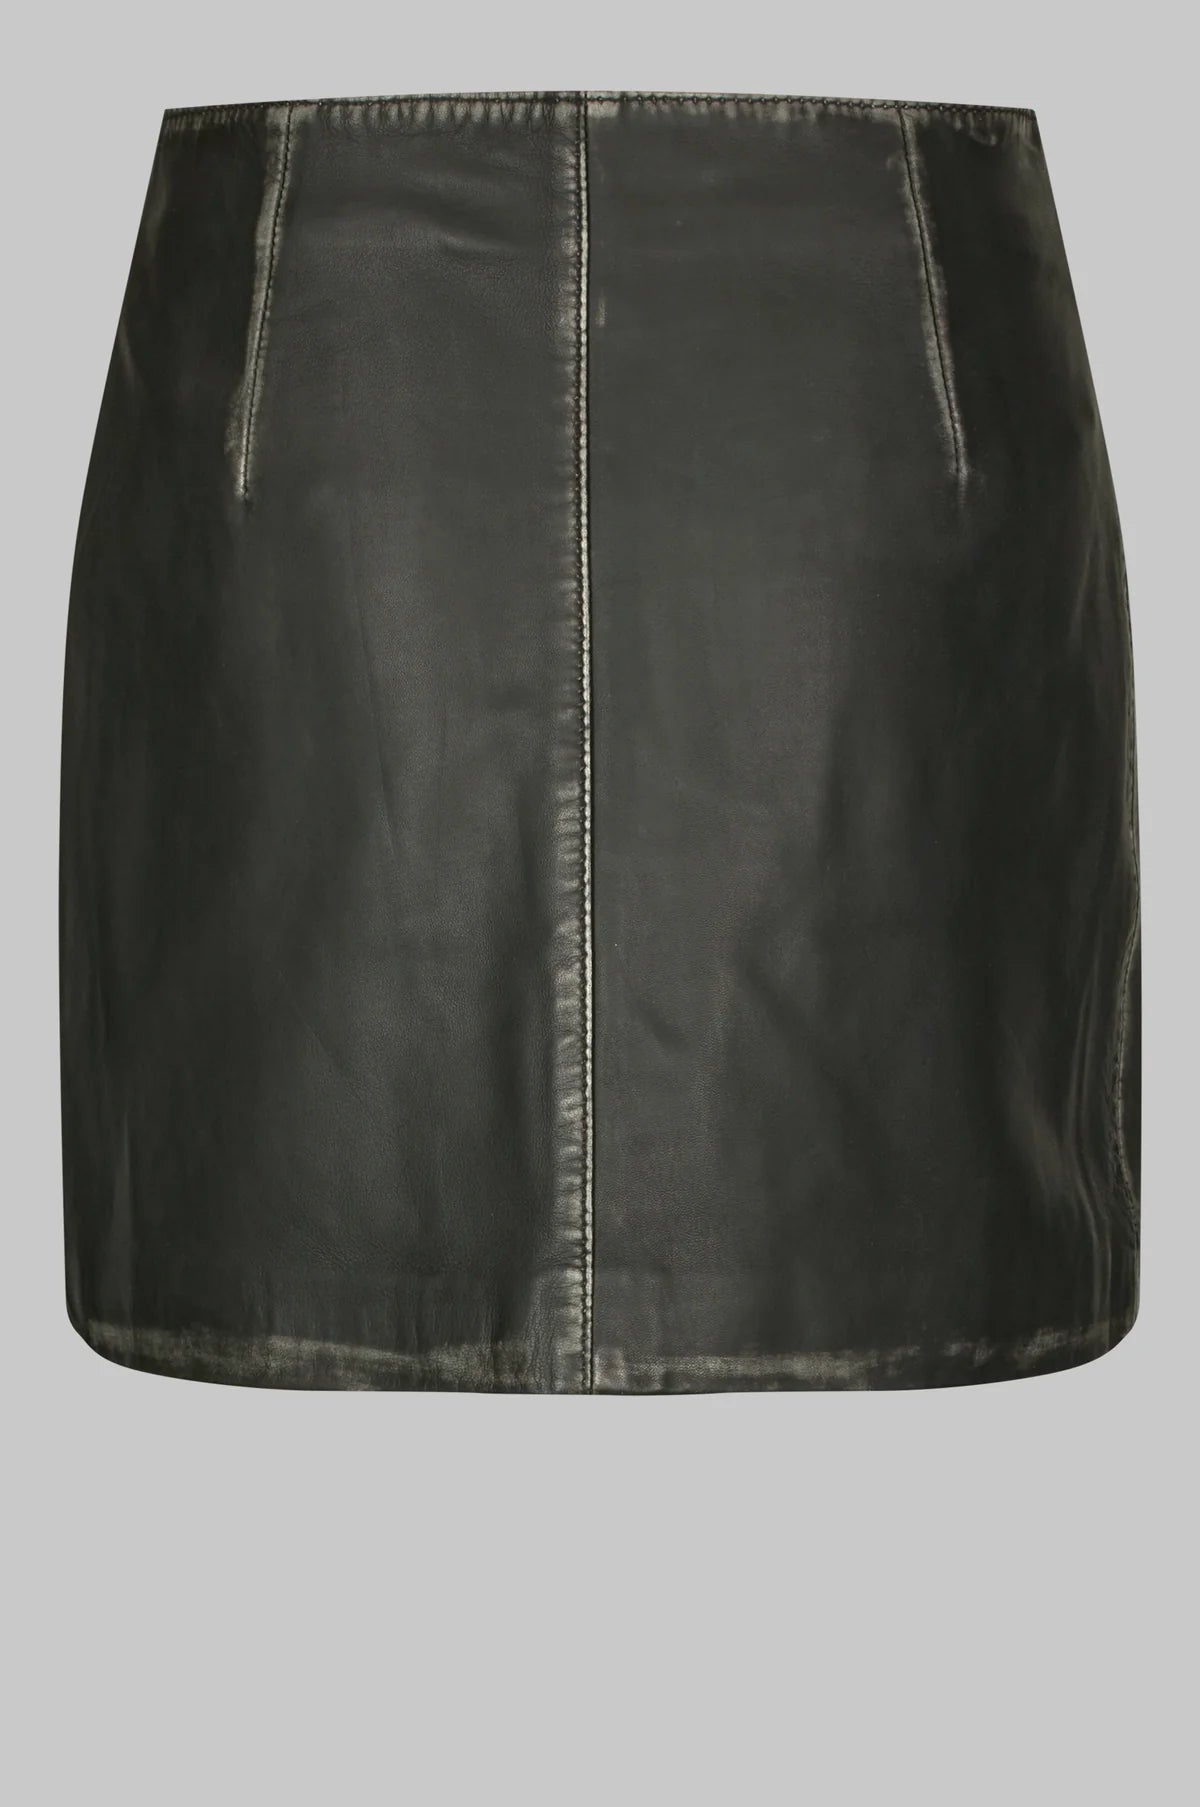 Oval Square OS Rocker Leather Skirt // Vintage Black